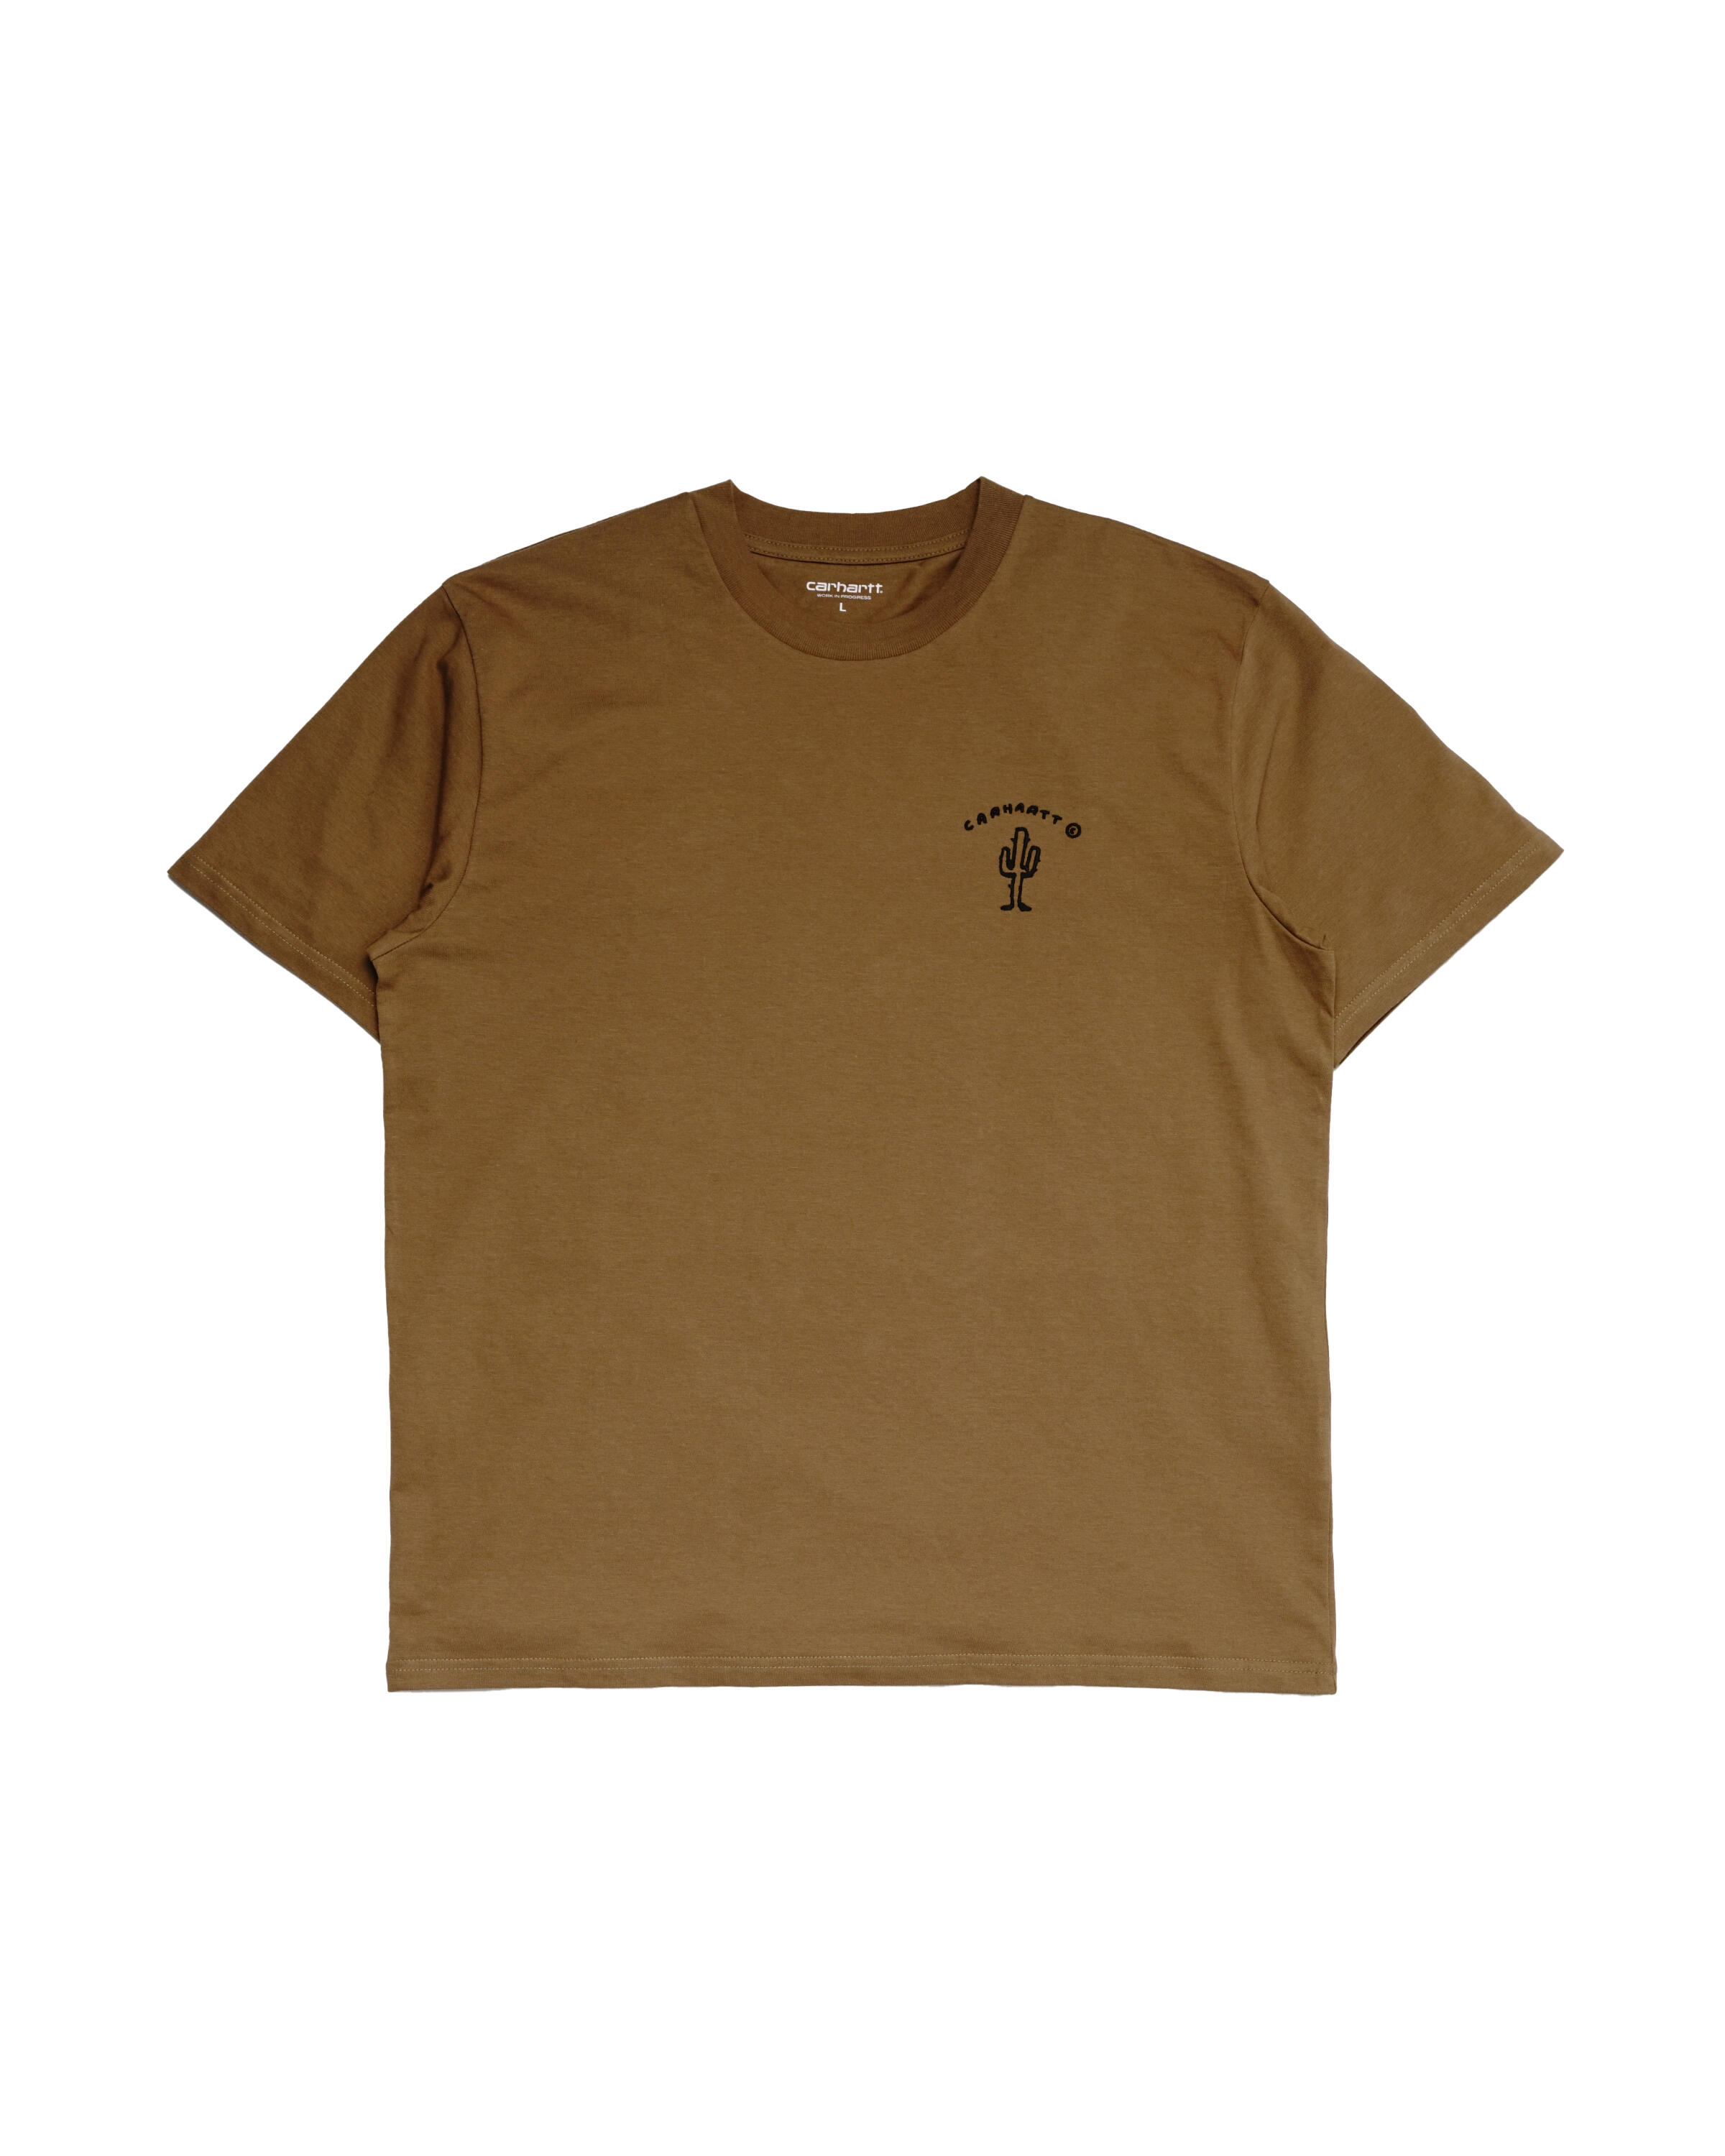 carhartt wip s/s new frontier t-shirt